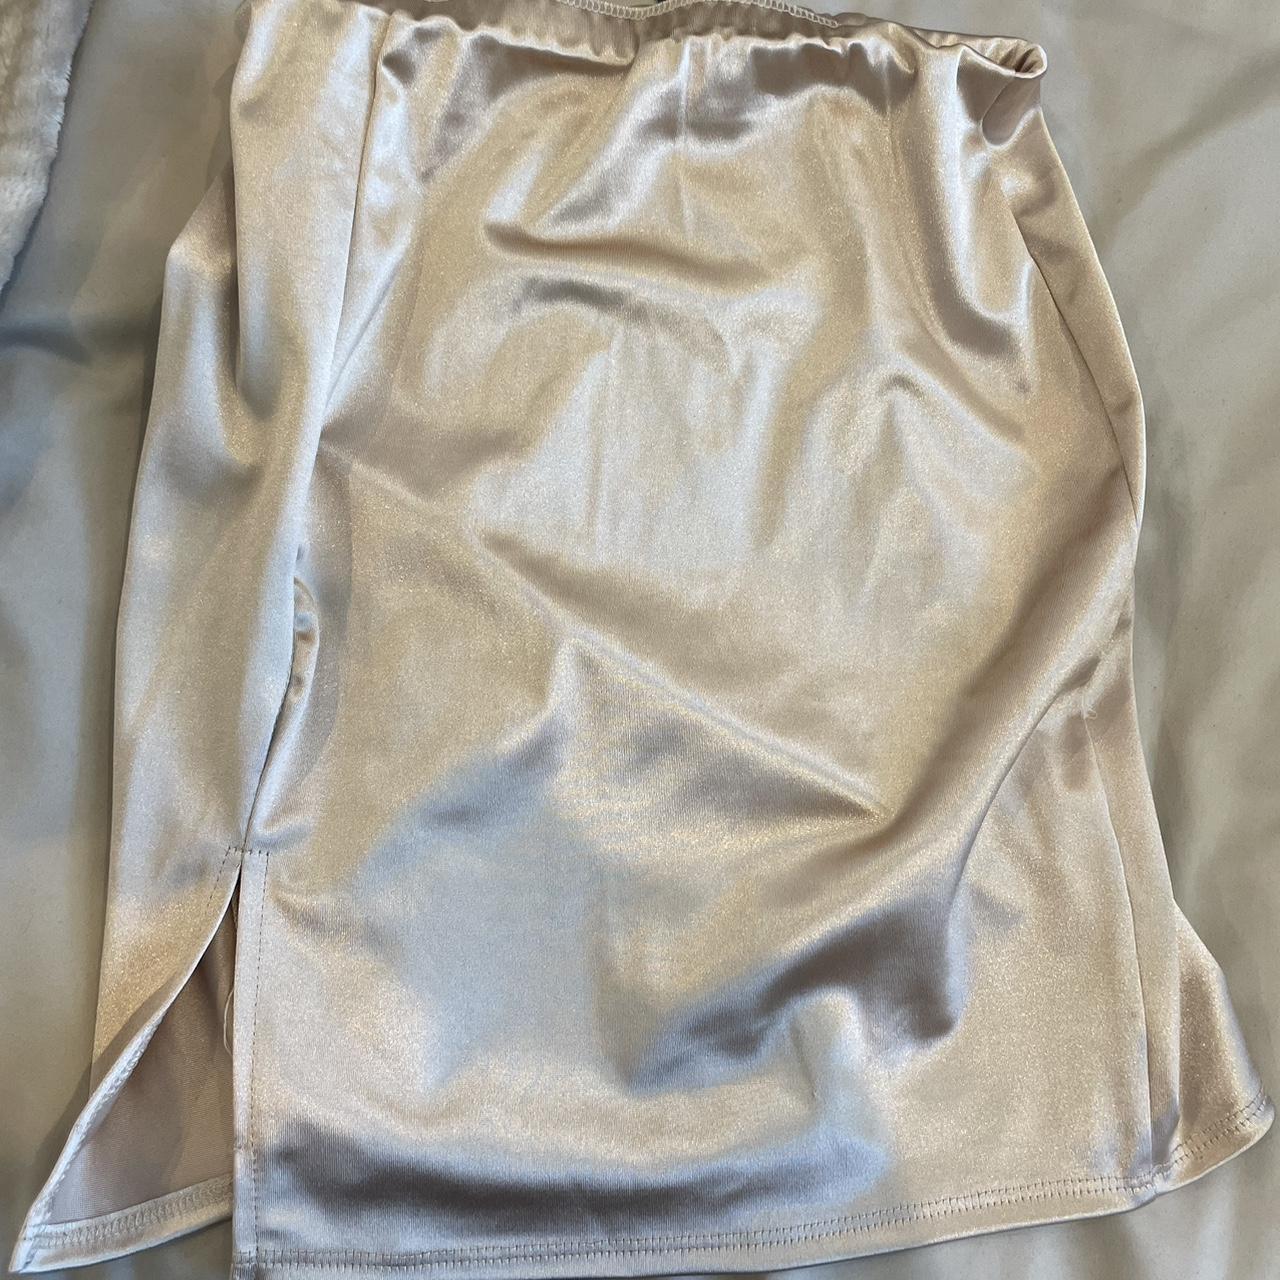 Gold satin never been worn mini skirt - Depop